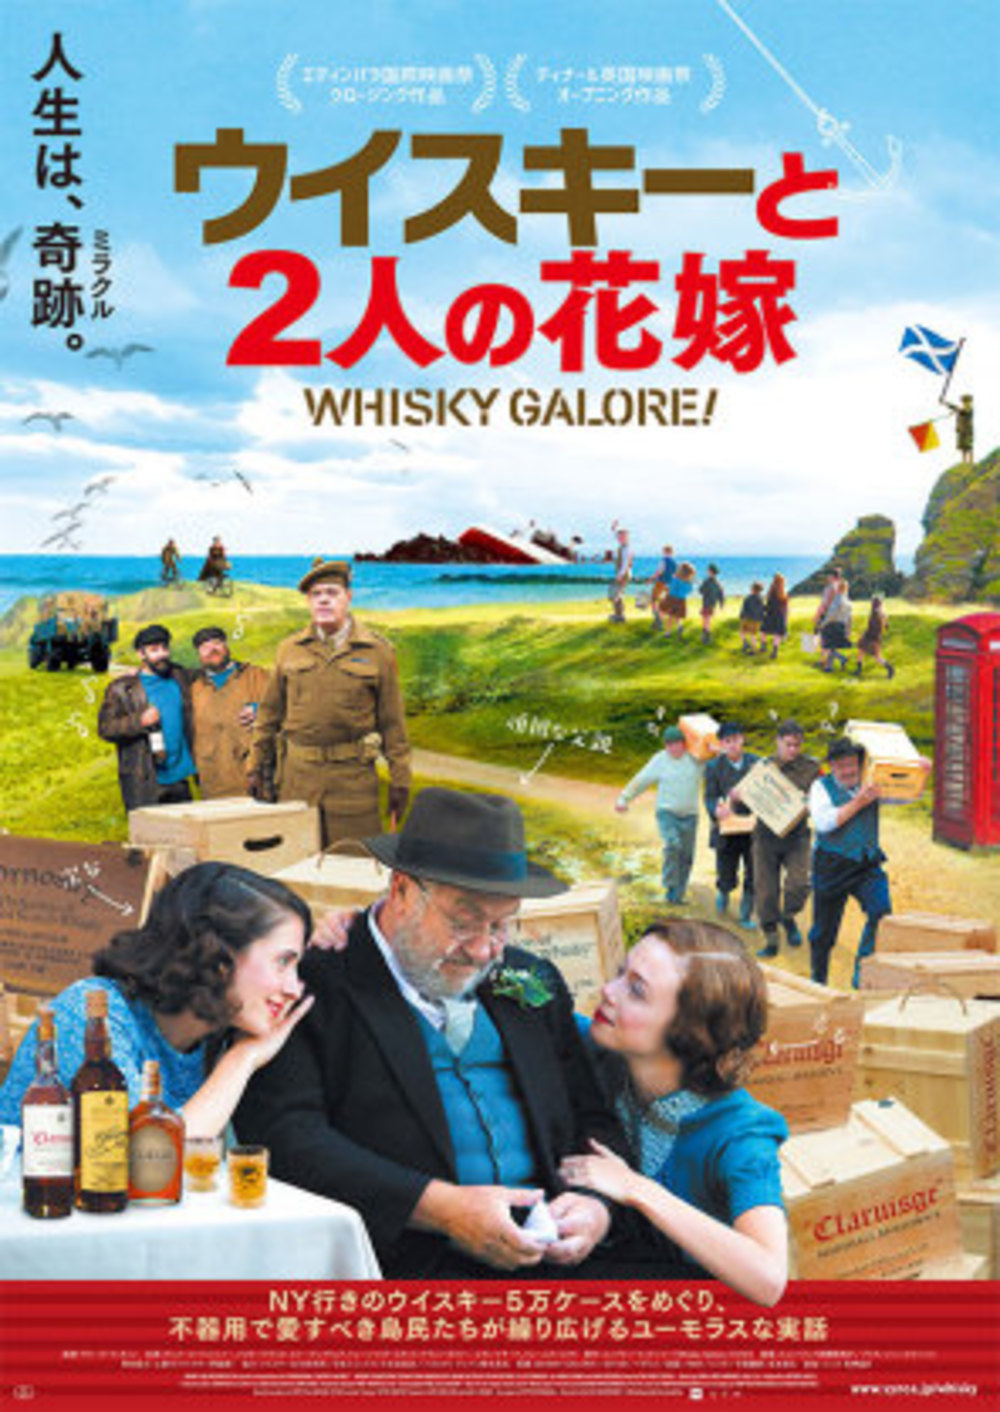 2/18日「ウイスキーと2人の花嫁」映画鑑賞会@有楽町